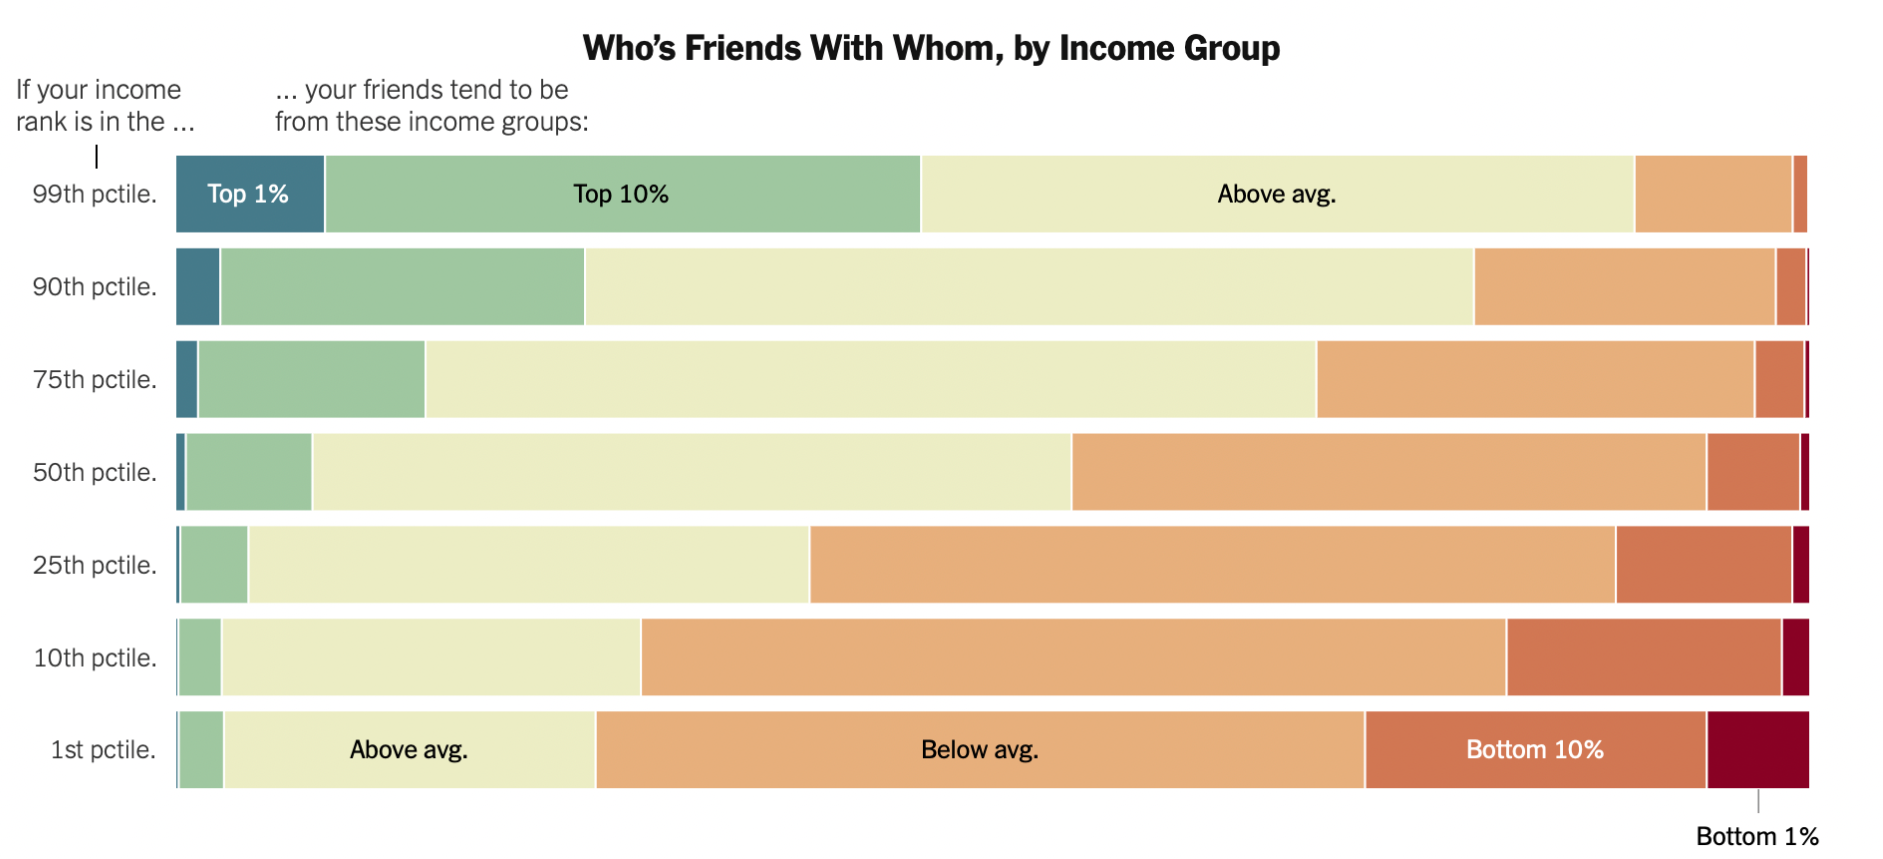 Kdo se s kým přátelí v rámci příjmových skupin